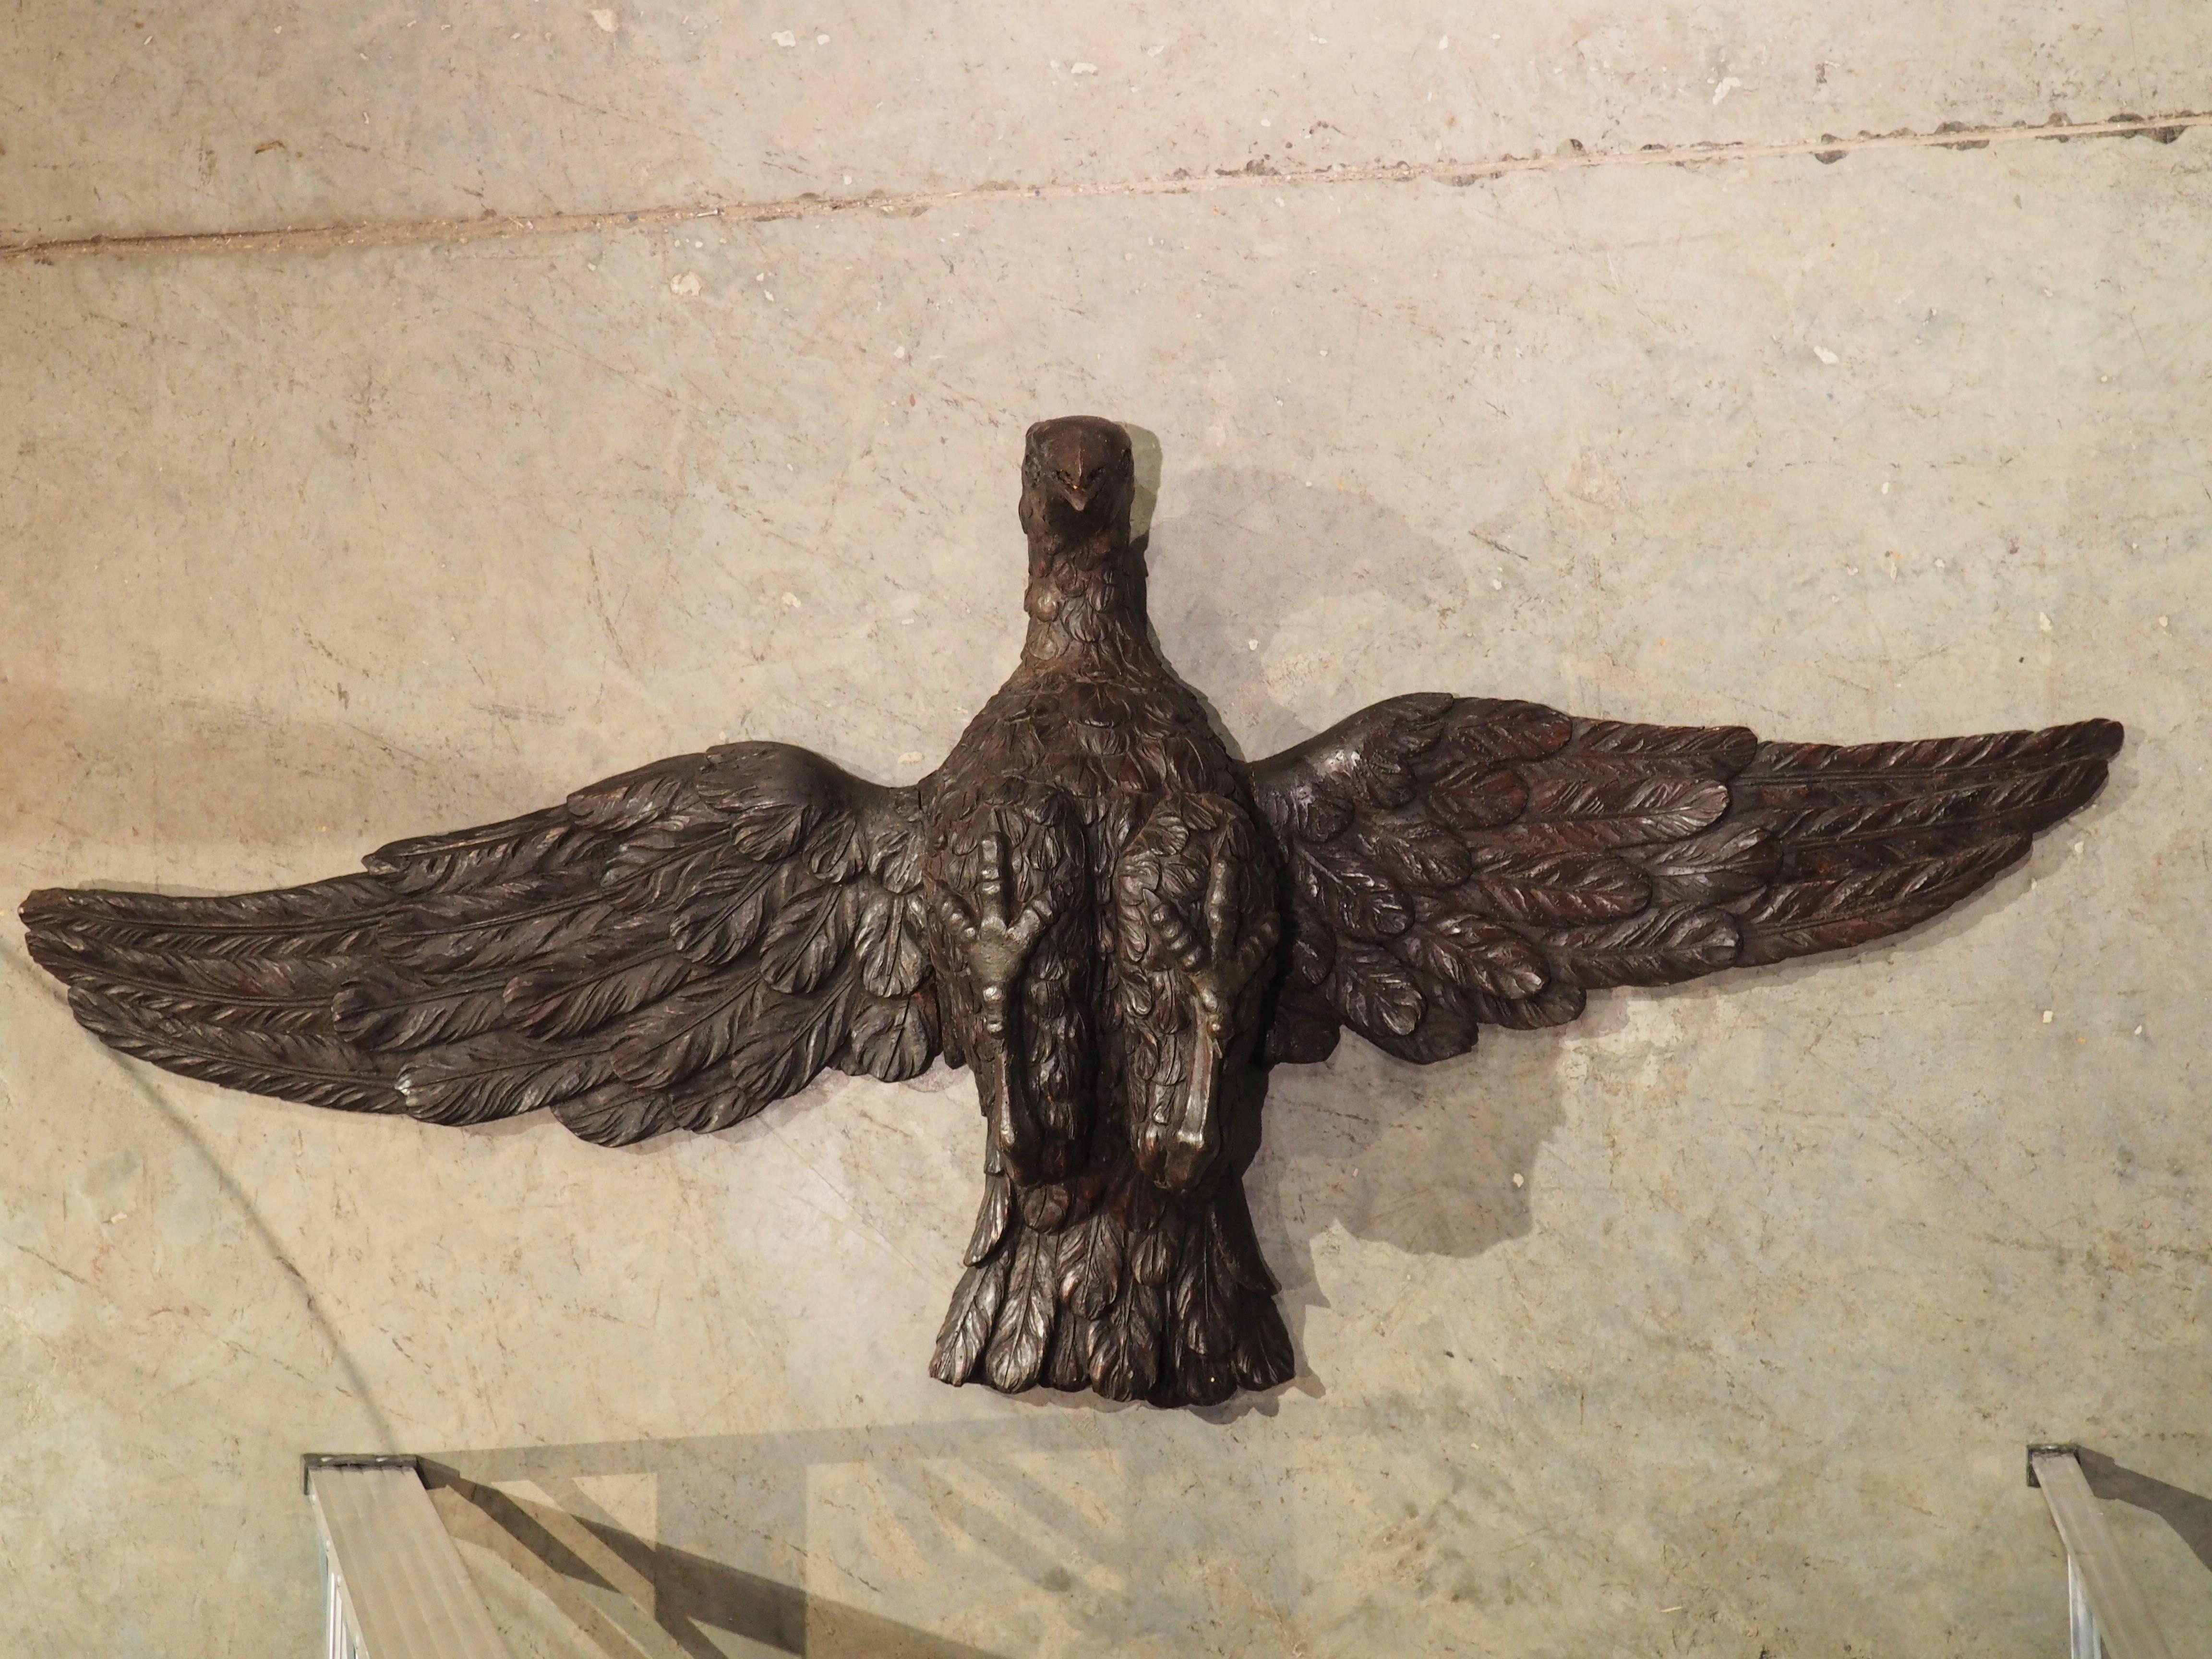 Avec une envergure d'un mètre et demi, cet aigle en bois a une présence imposante. Sculpté à la main en France, vers 1810, l'aigle a été réalisé par un maître ébéniste. Remarquez comment chaque plume a été sculptée avec un détail incroyable,